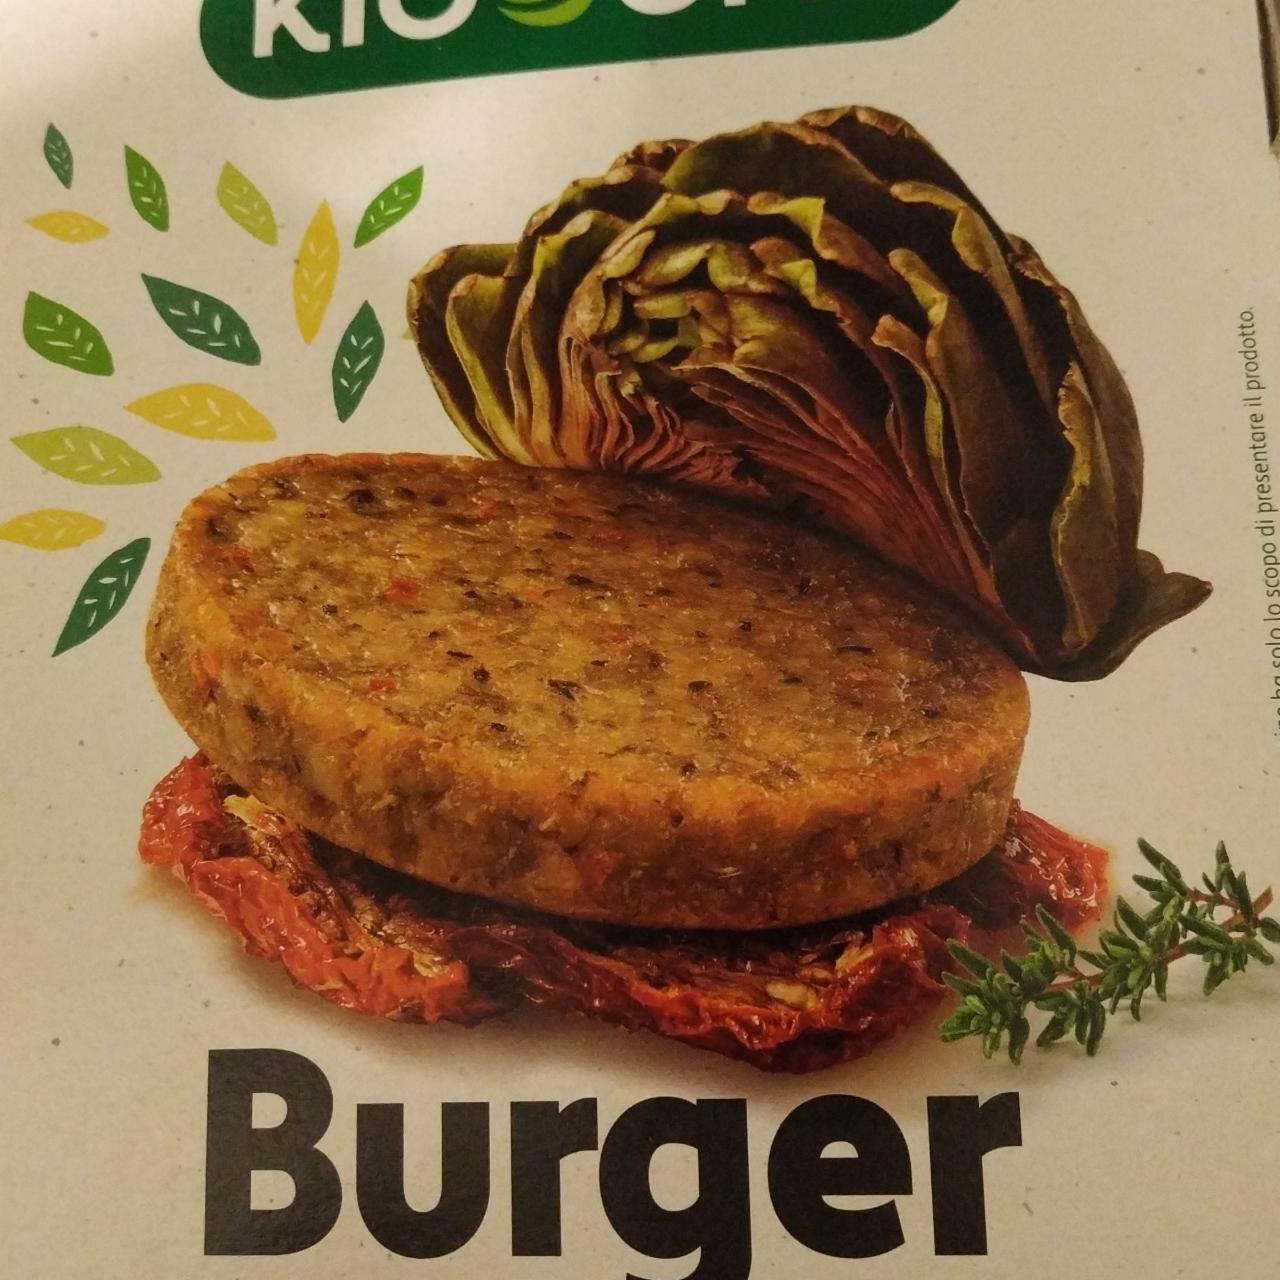 Fotografie - Burger vegetale carciofi e pomodori secchi Kioene